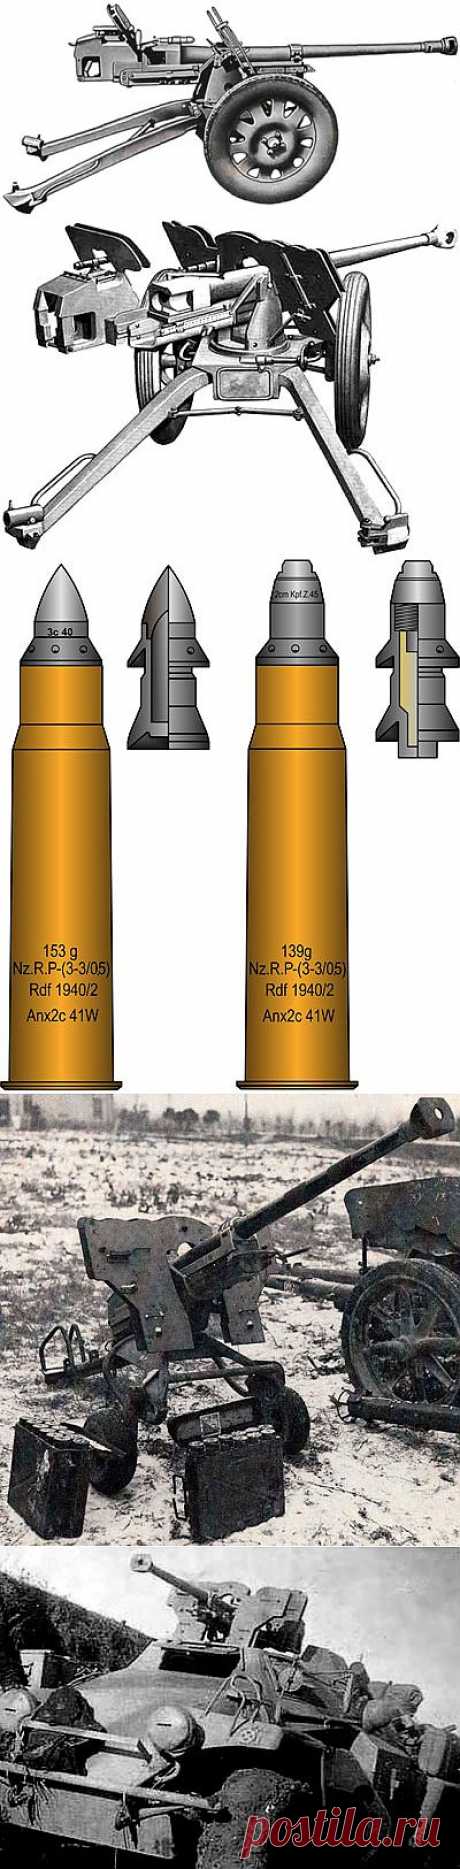 Тяжелое противотанковое ружье sPzB 41 | Энциклопедия оружия